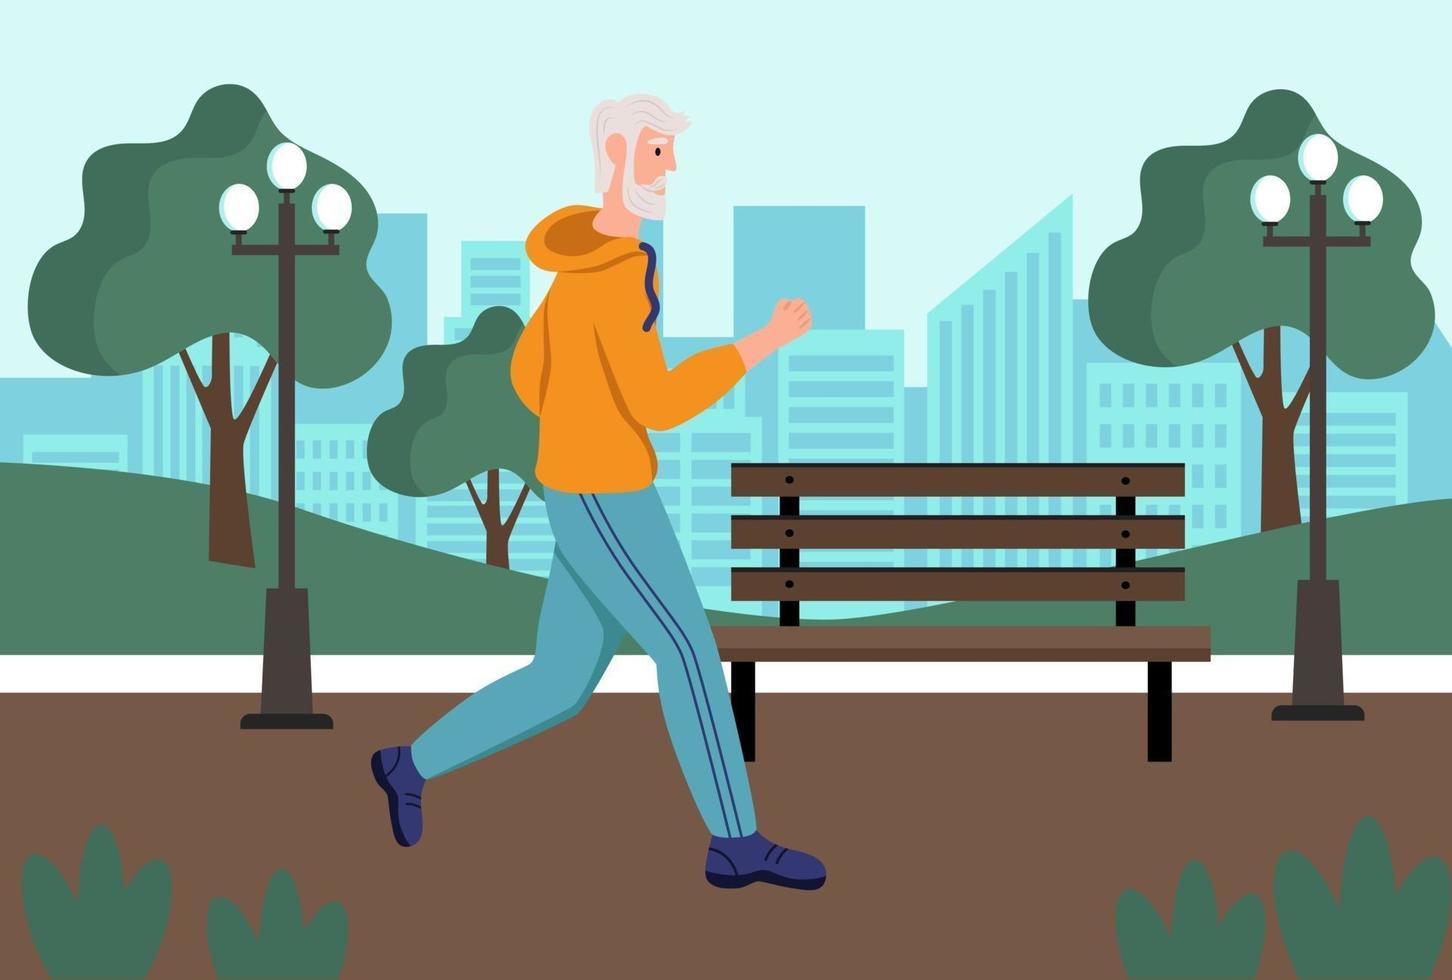 um homem idoso corre no parque. o conceito de velhice ativa, esportes e corrida. dia do idoso. ilustração em vetor plana dos desenhos animados.